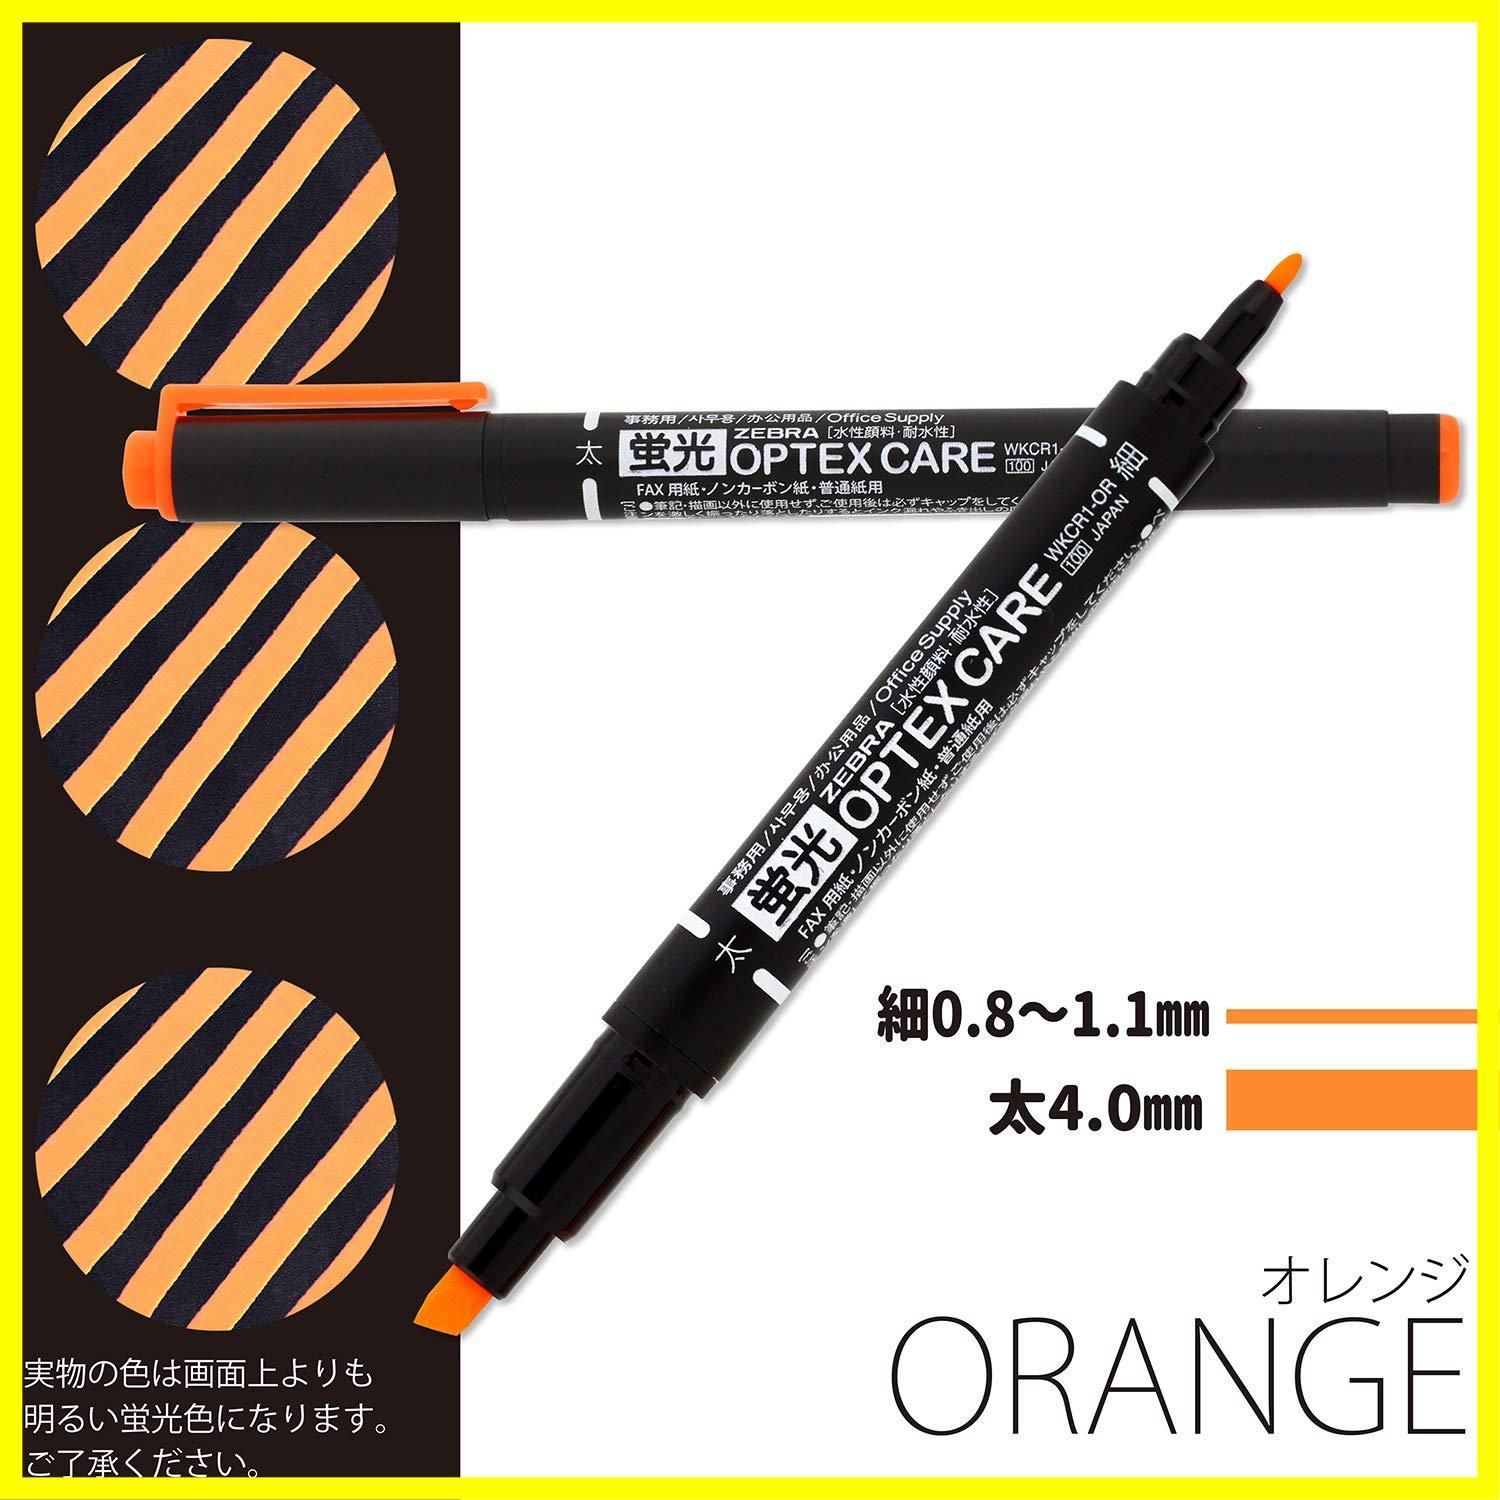 特価商品】オプテックスケア 蛍光ペン オレンジ 10本 ゼブラ B-WKCR1